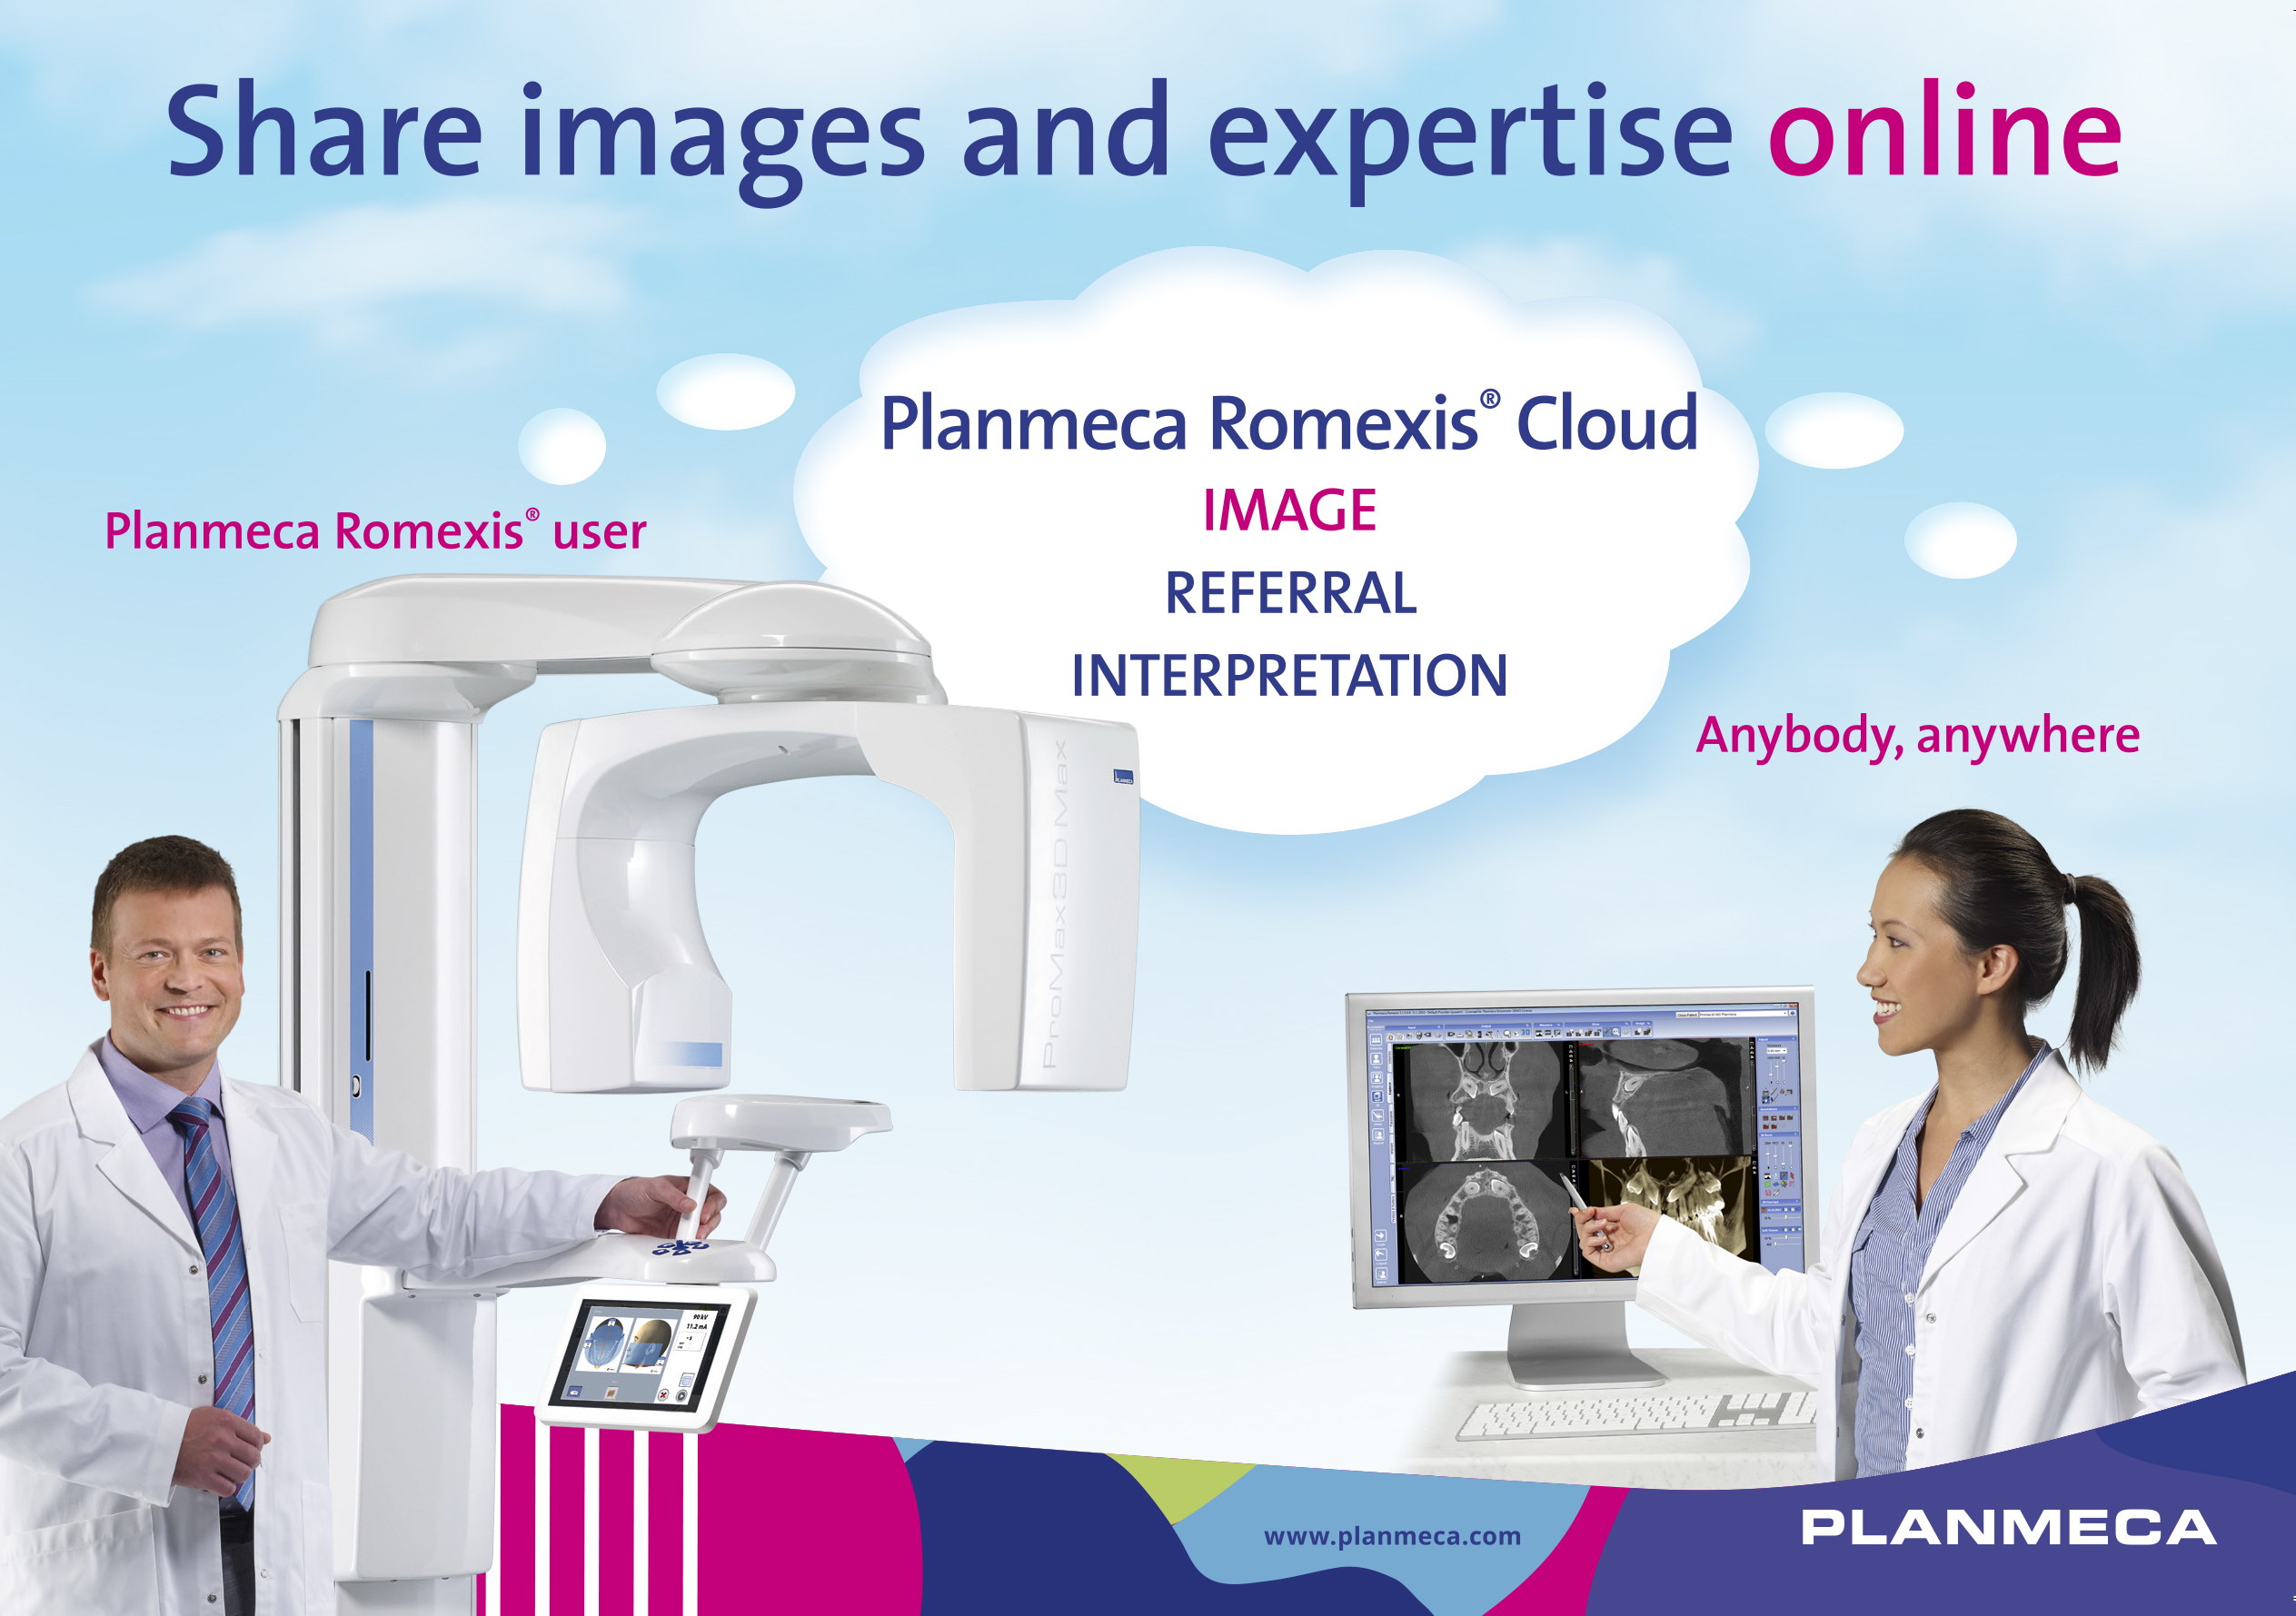 Neuer Service Planmeca Romexis® Cloud ermöglicht einfache Bildübertragung zwischen Fachkräften